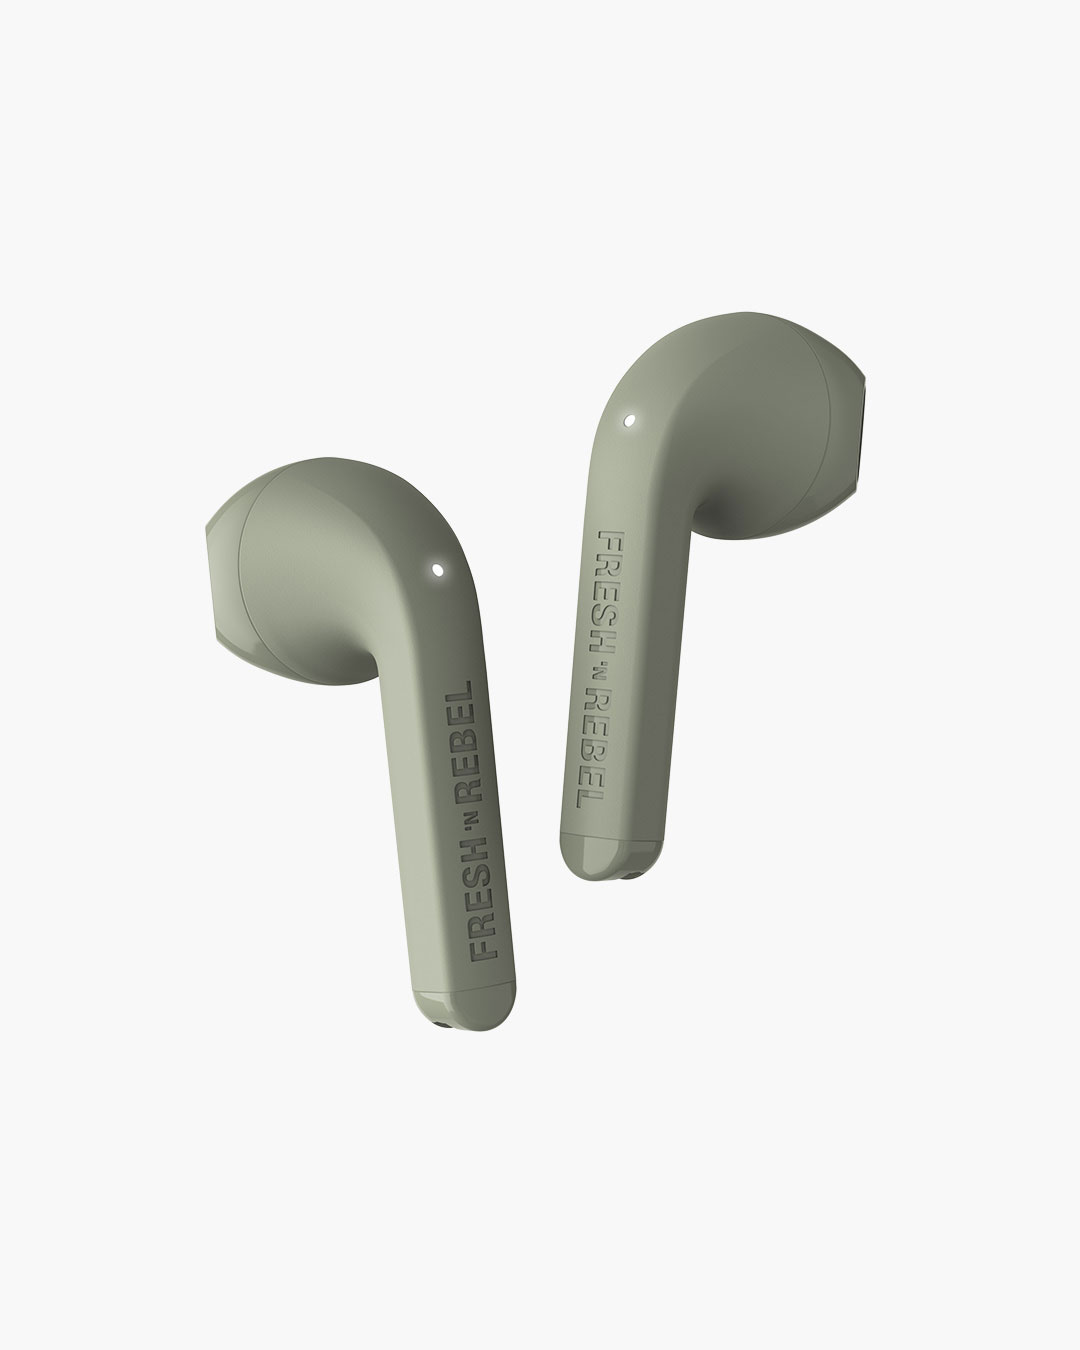 Fresh 'n Rebel - Twins 1 - True Wireless In-ear headphones - Dried Green